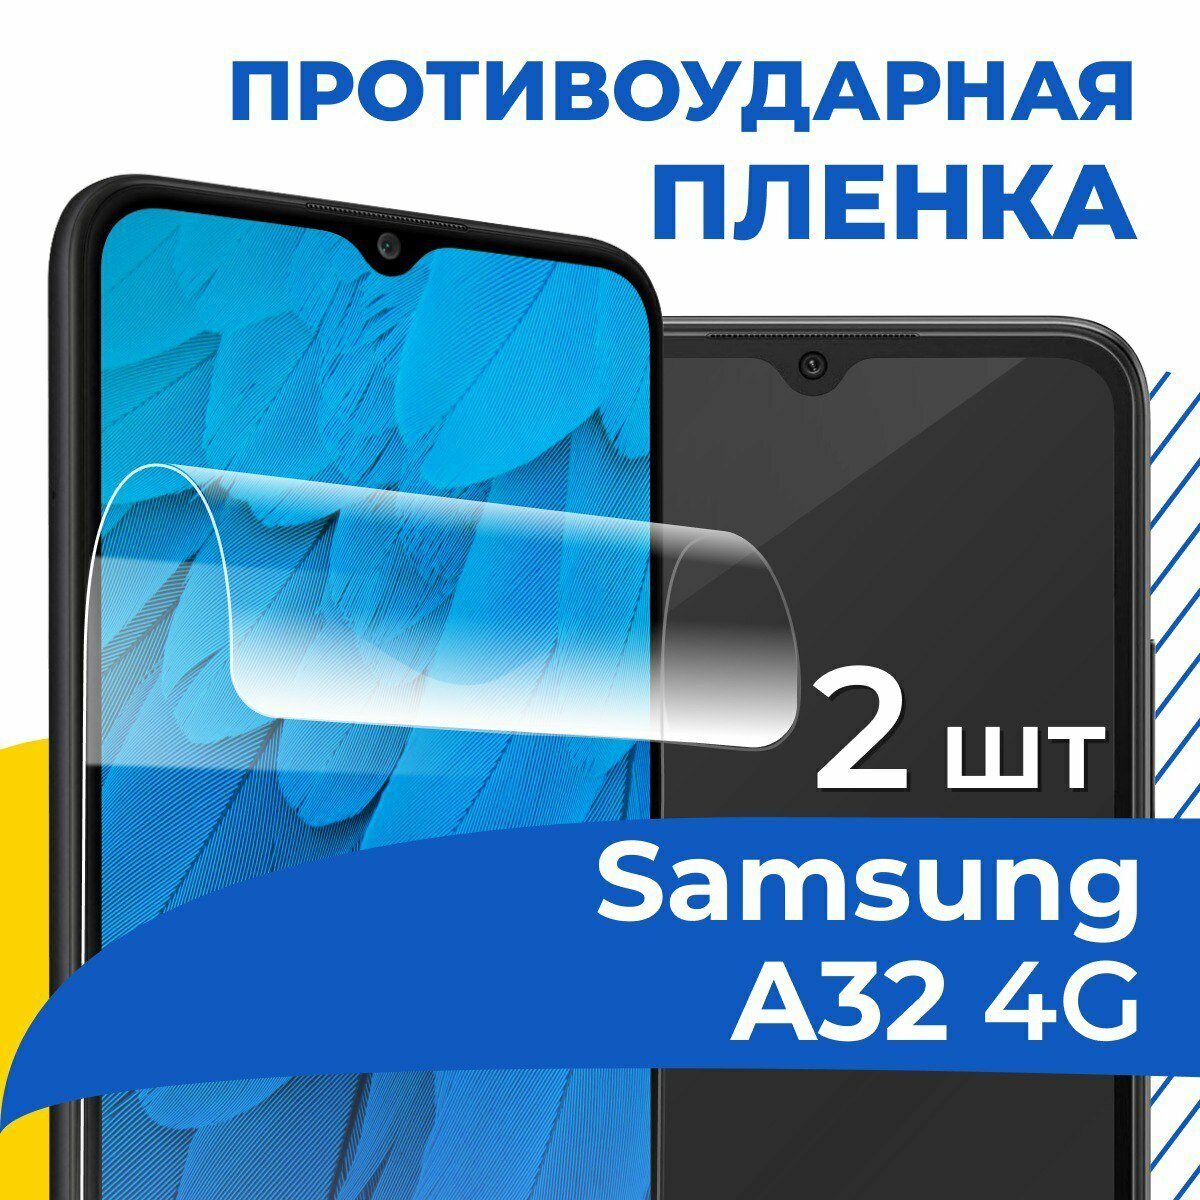 Комплект 2 шт. Гидрогелевая пленка для Samsung Galaxy A32 4G / Противоударная защитная пленка на телефон Самсунг А32 4Г / Самовосстанавливающаяся пленка